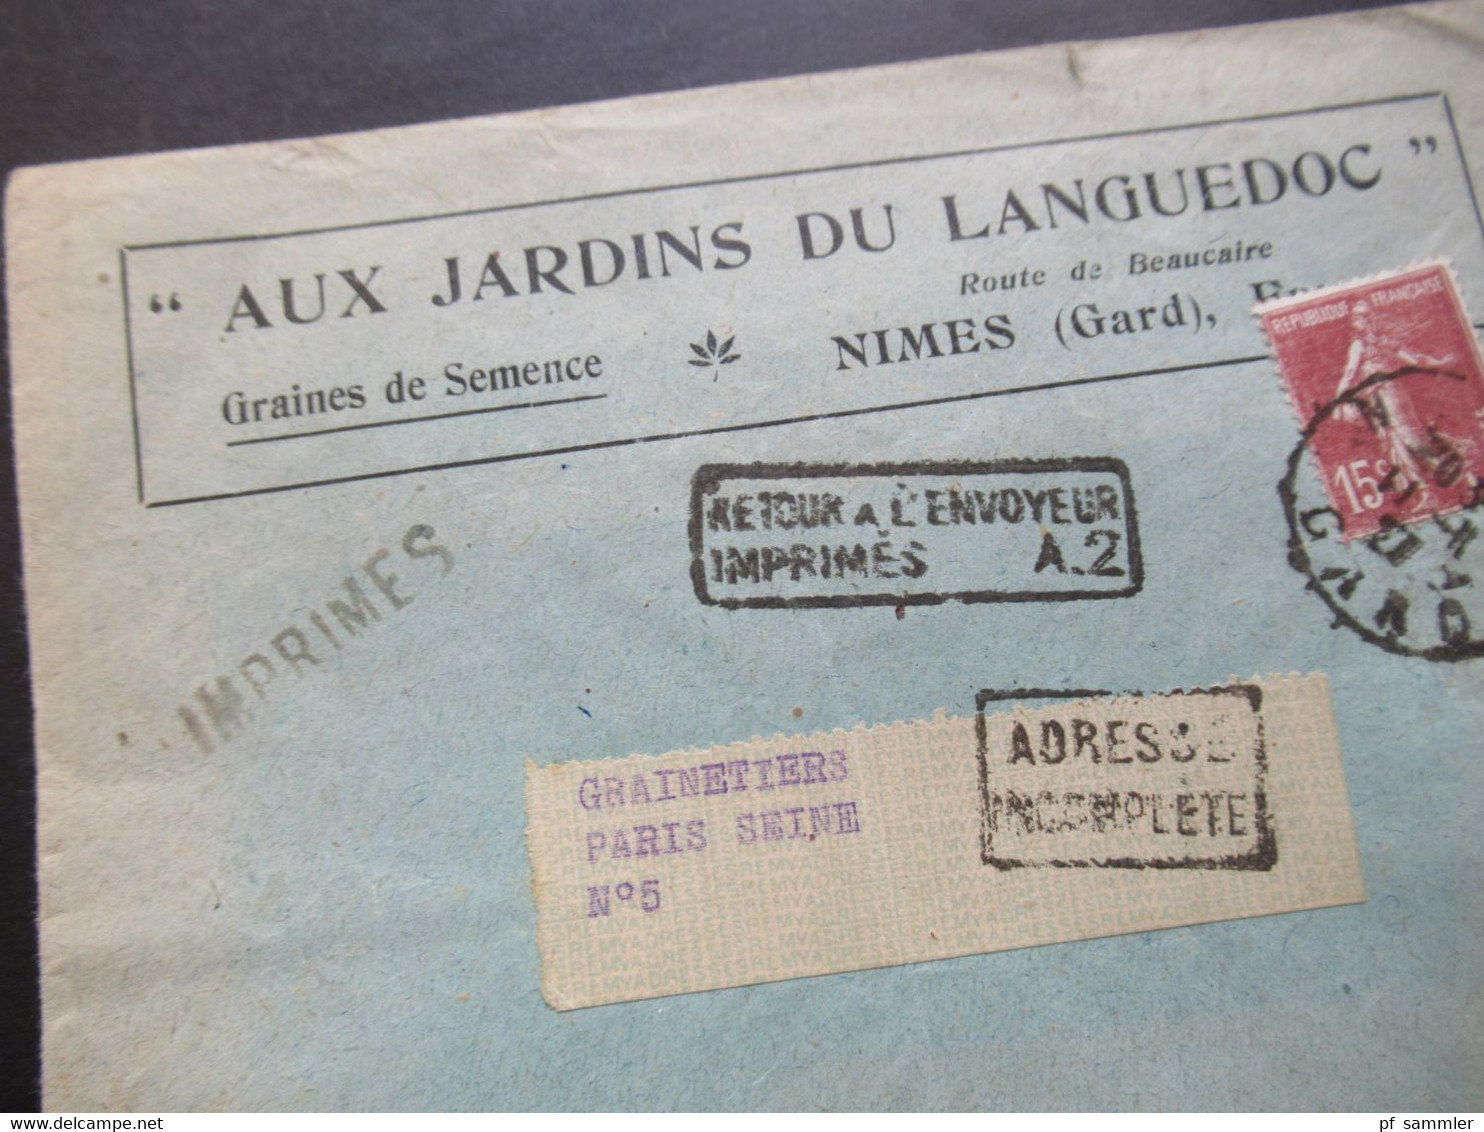 Frankreich 1927 Säerin Aux Jardins Du Languedoc Stempel Ra2 Retour A L'Envoyeur Imprimes A.2 Und Adresse Incomplete - 1906-38 Sower - Cameo